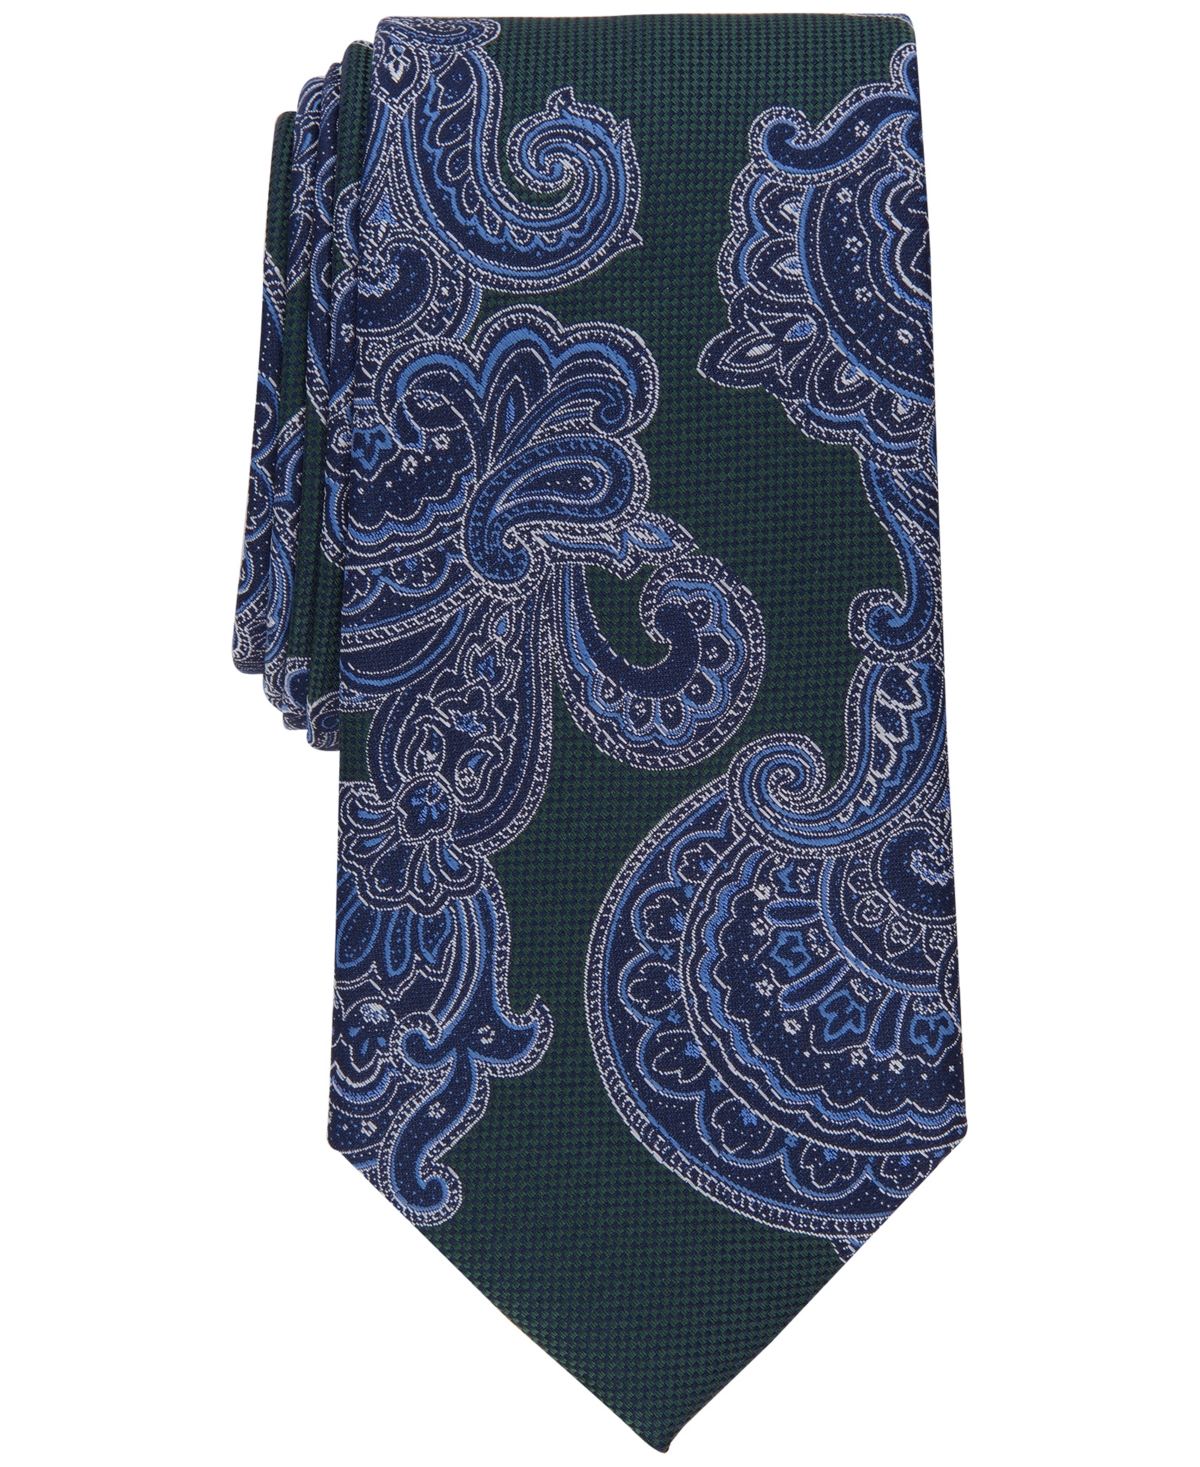 Men's Lacruz Classic Paisley Tie, Created for Macy's - Navy